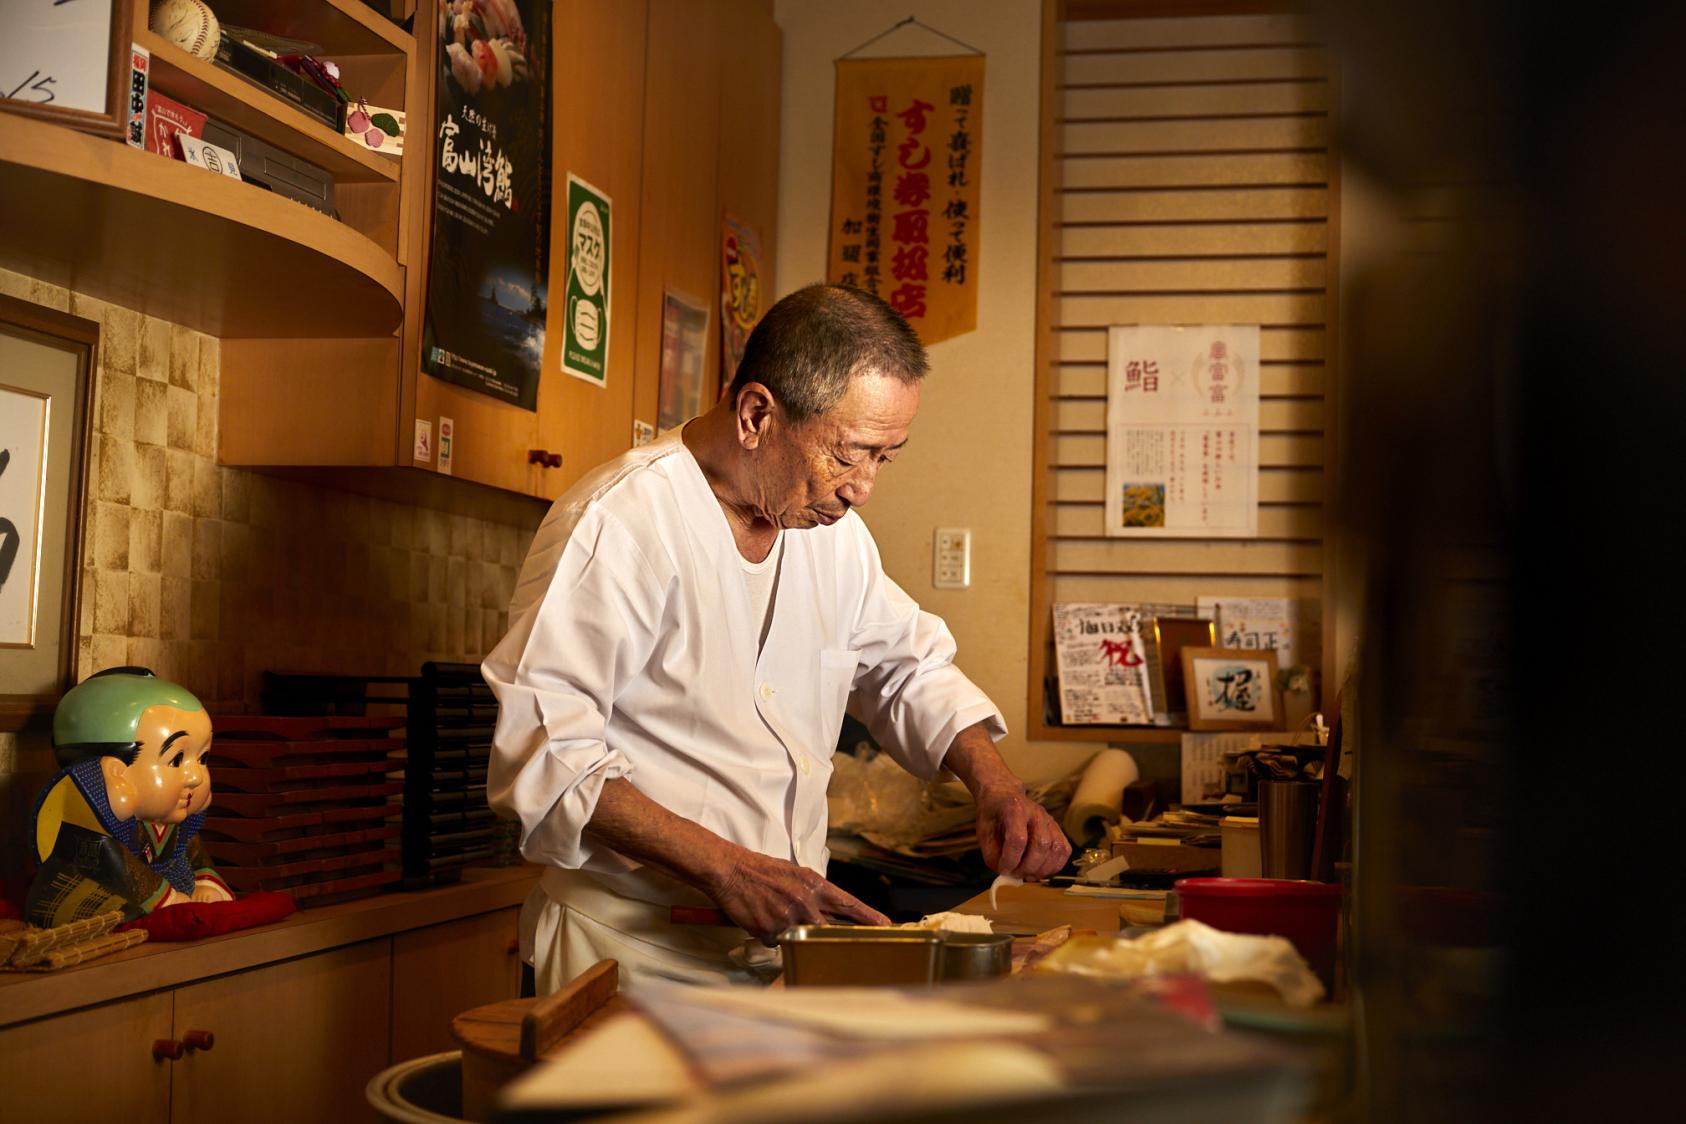 富山市にある「江戸前 寿司正」で
「富山湾鮨」を味わう-0